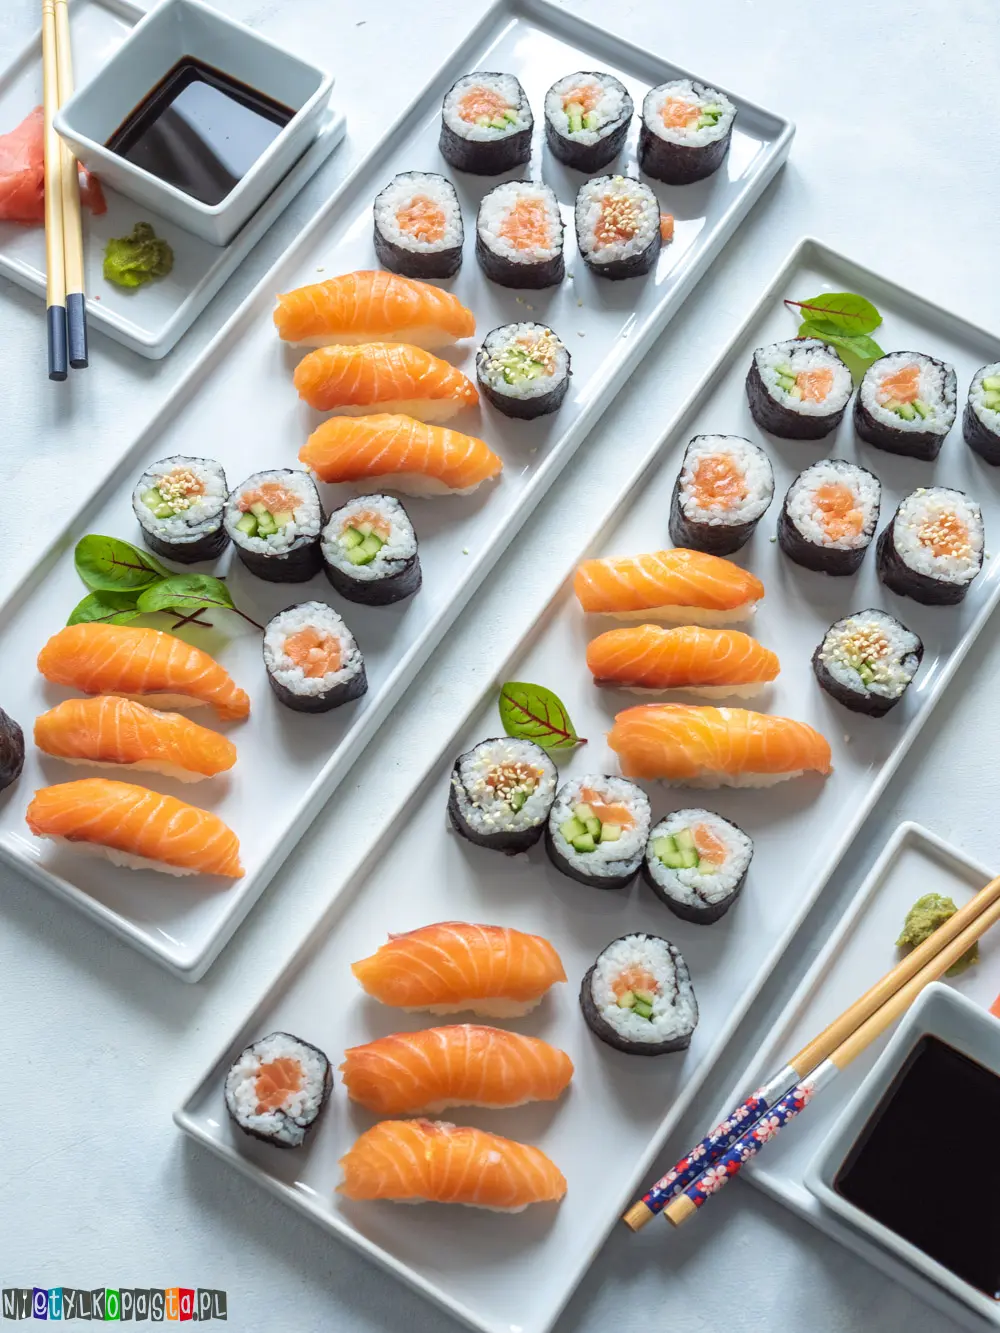 można użyć listownicy do sushi - Czy listownica mogą być wykorzystywane do produkcji sushi